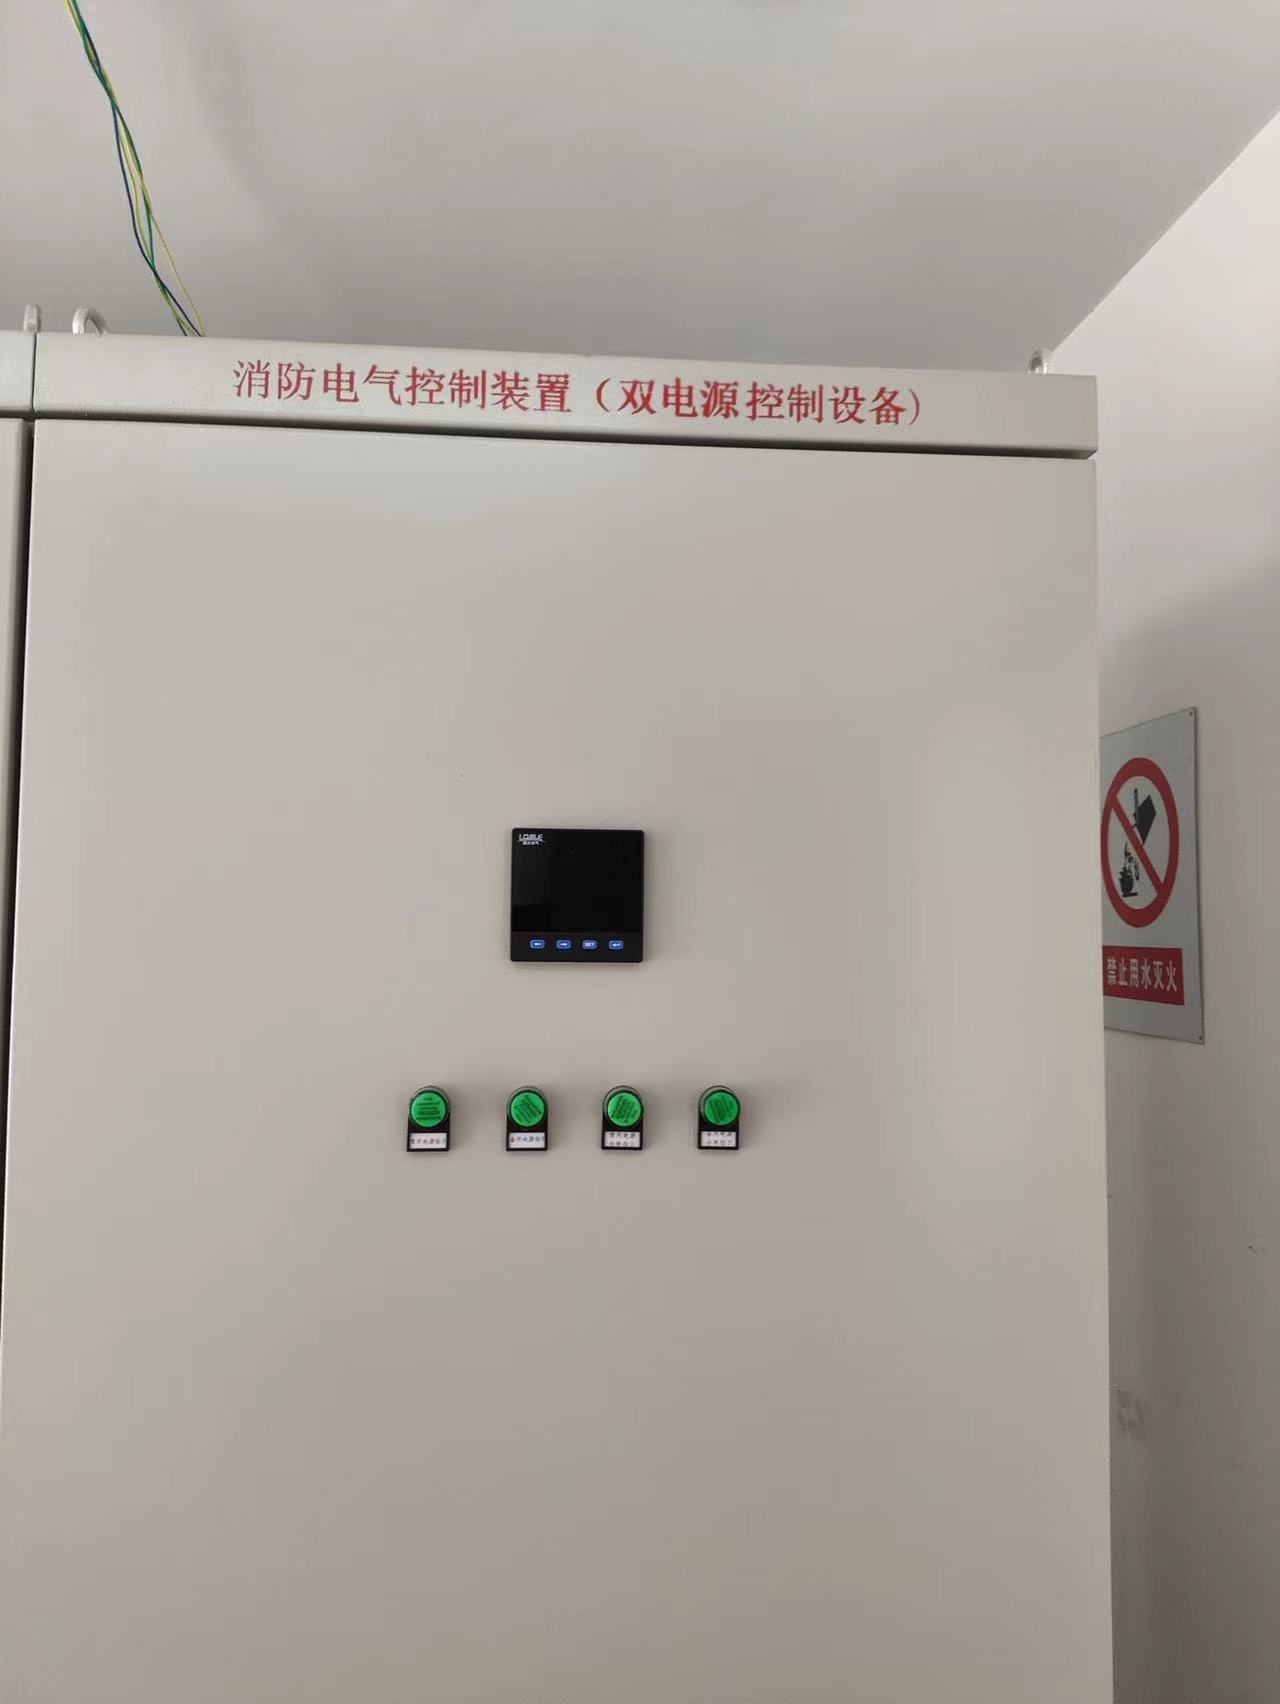 四川中京燃气技改项目消防电气控制装置（双电源设备）